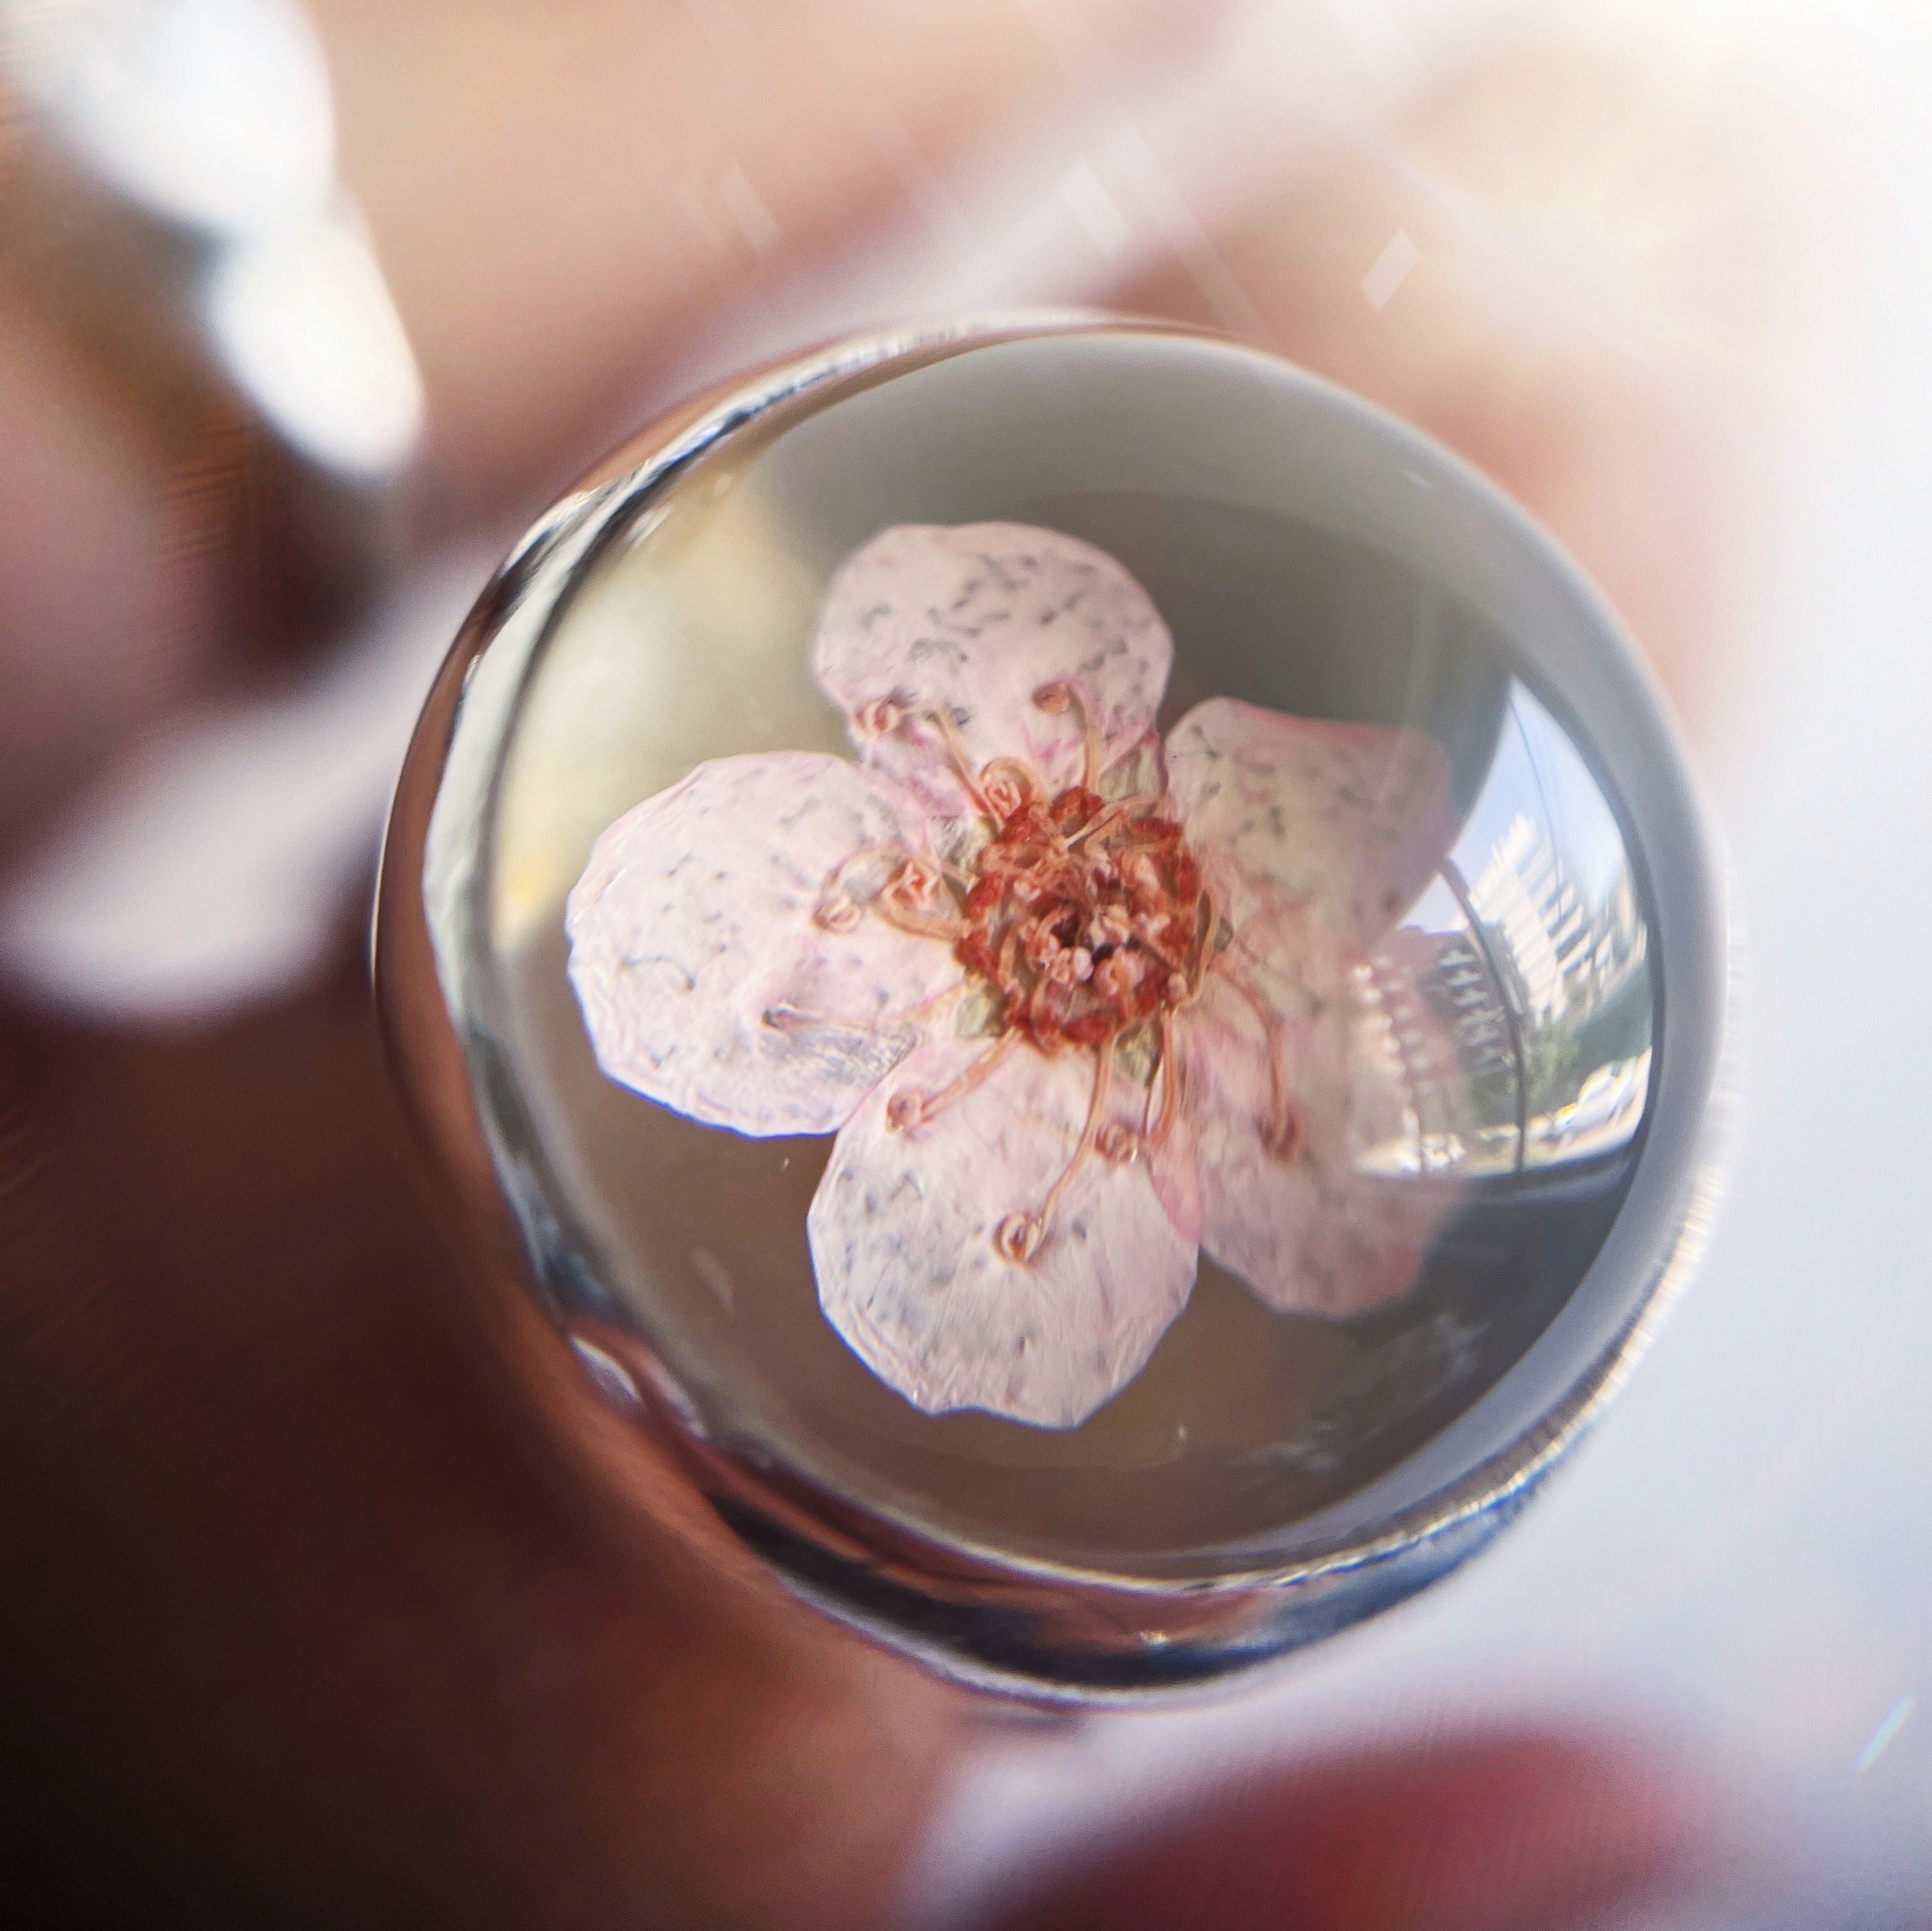 Anillo Florcita Encapsulada / Cherry Blossom